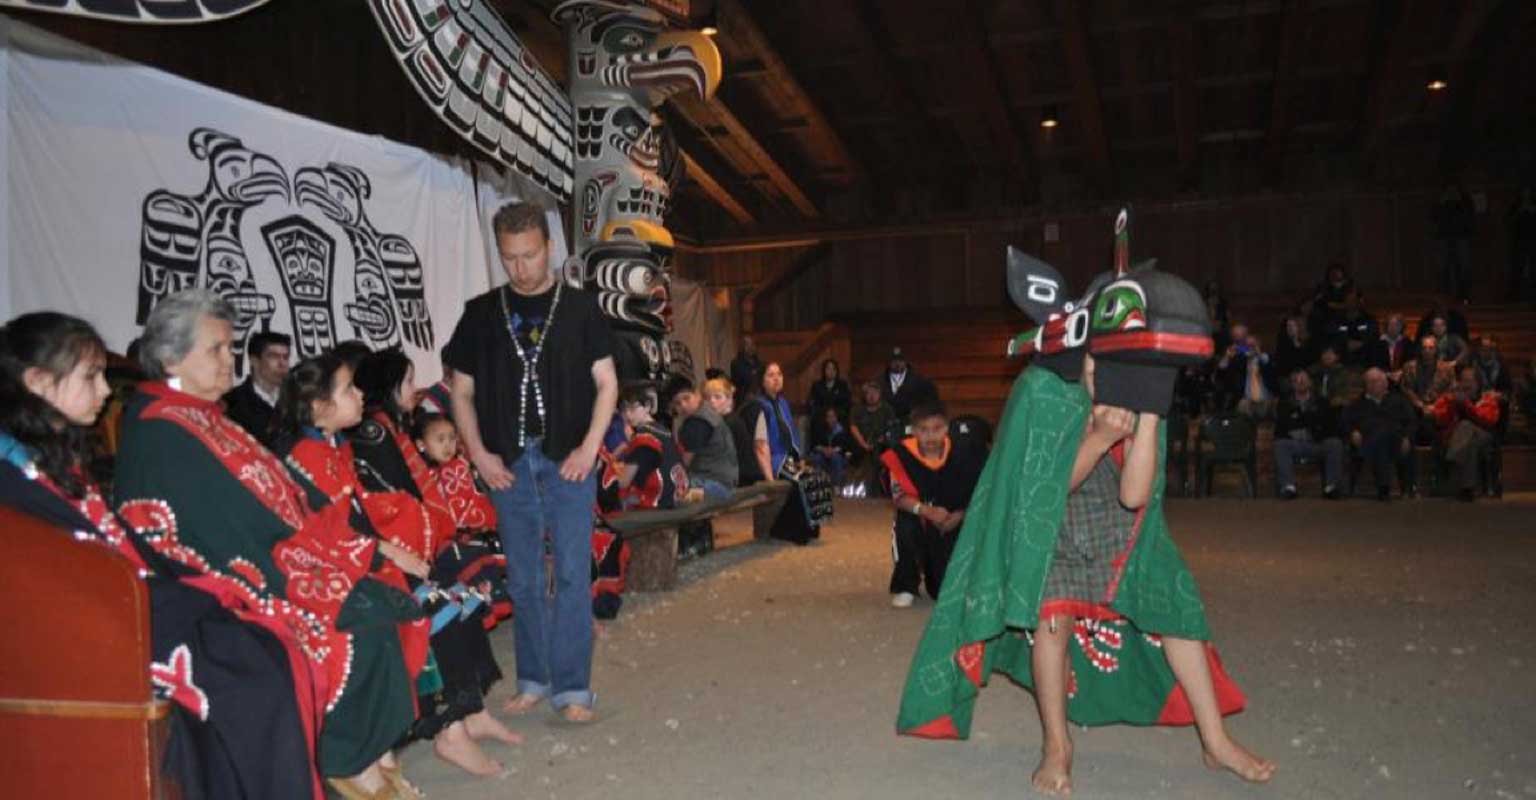 Photographie couleur un jeune danseur Imas portant un masque de baleine et une cape verte, devant une foule assemblée dans la maison cérémonielle